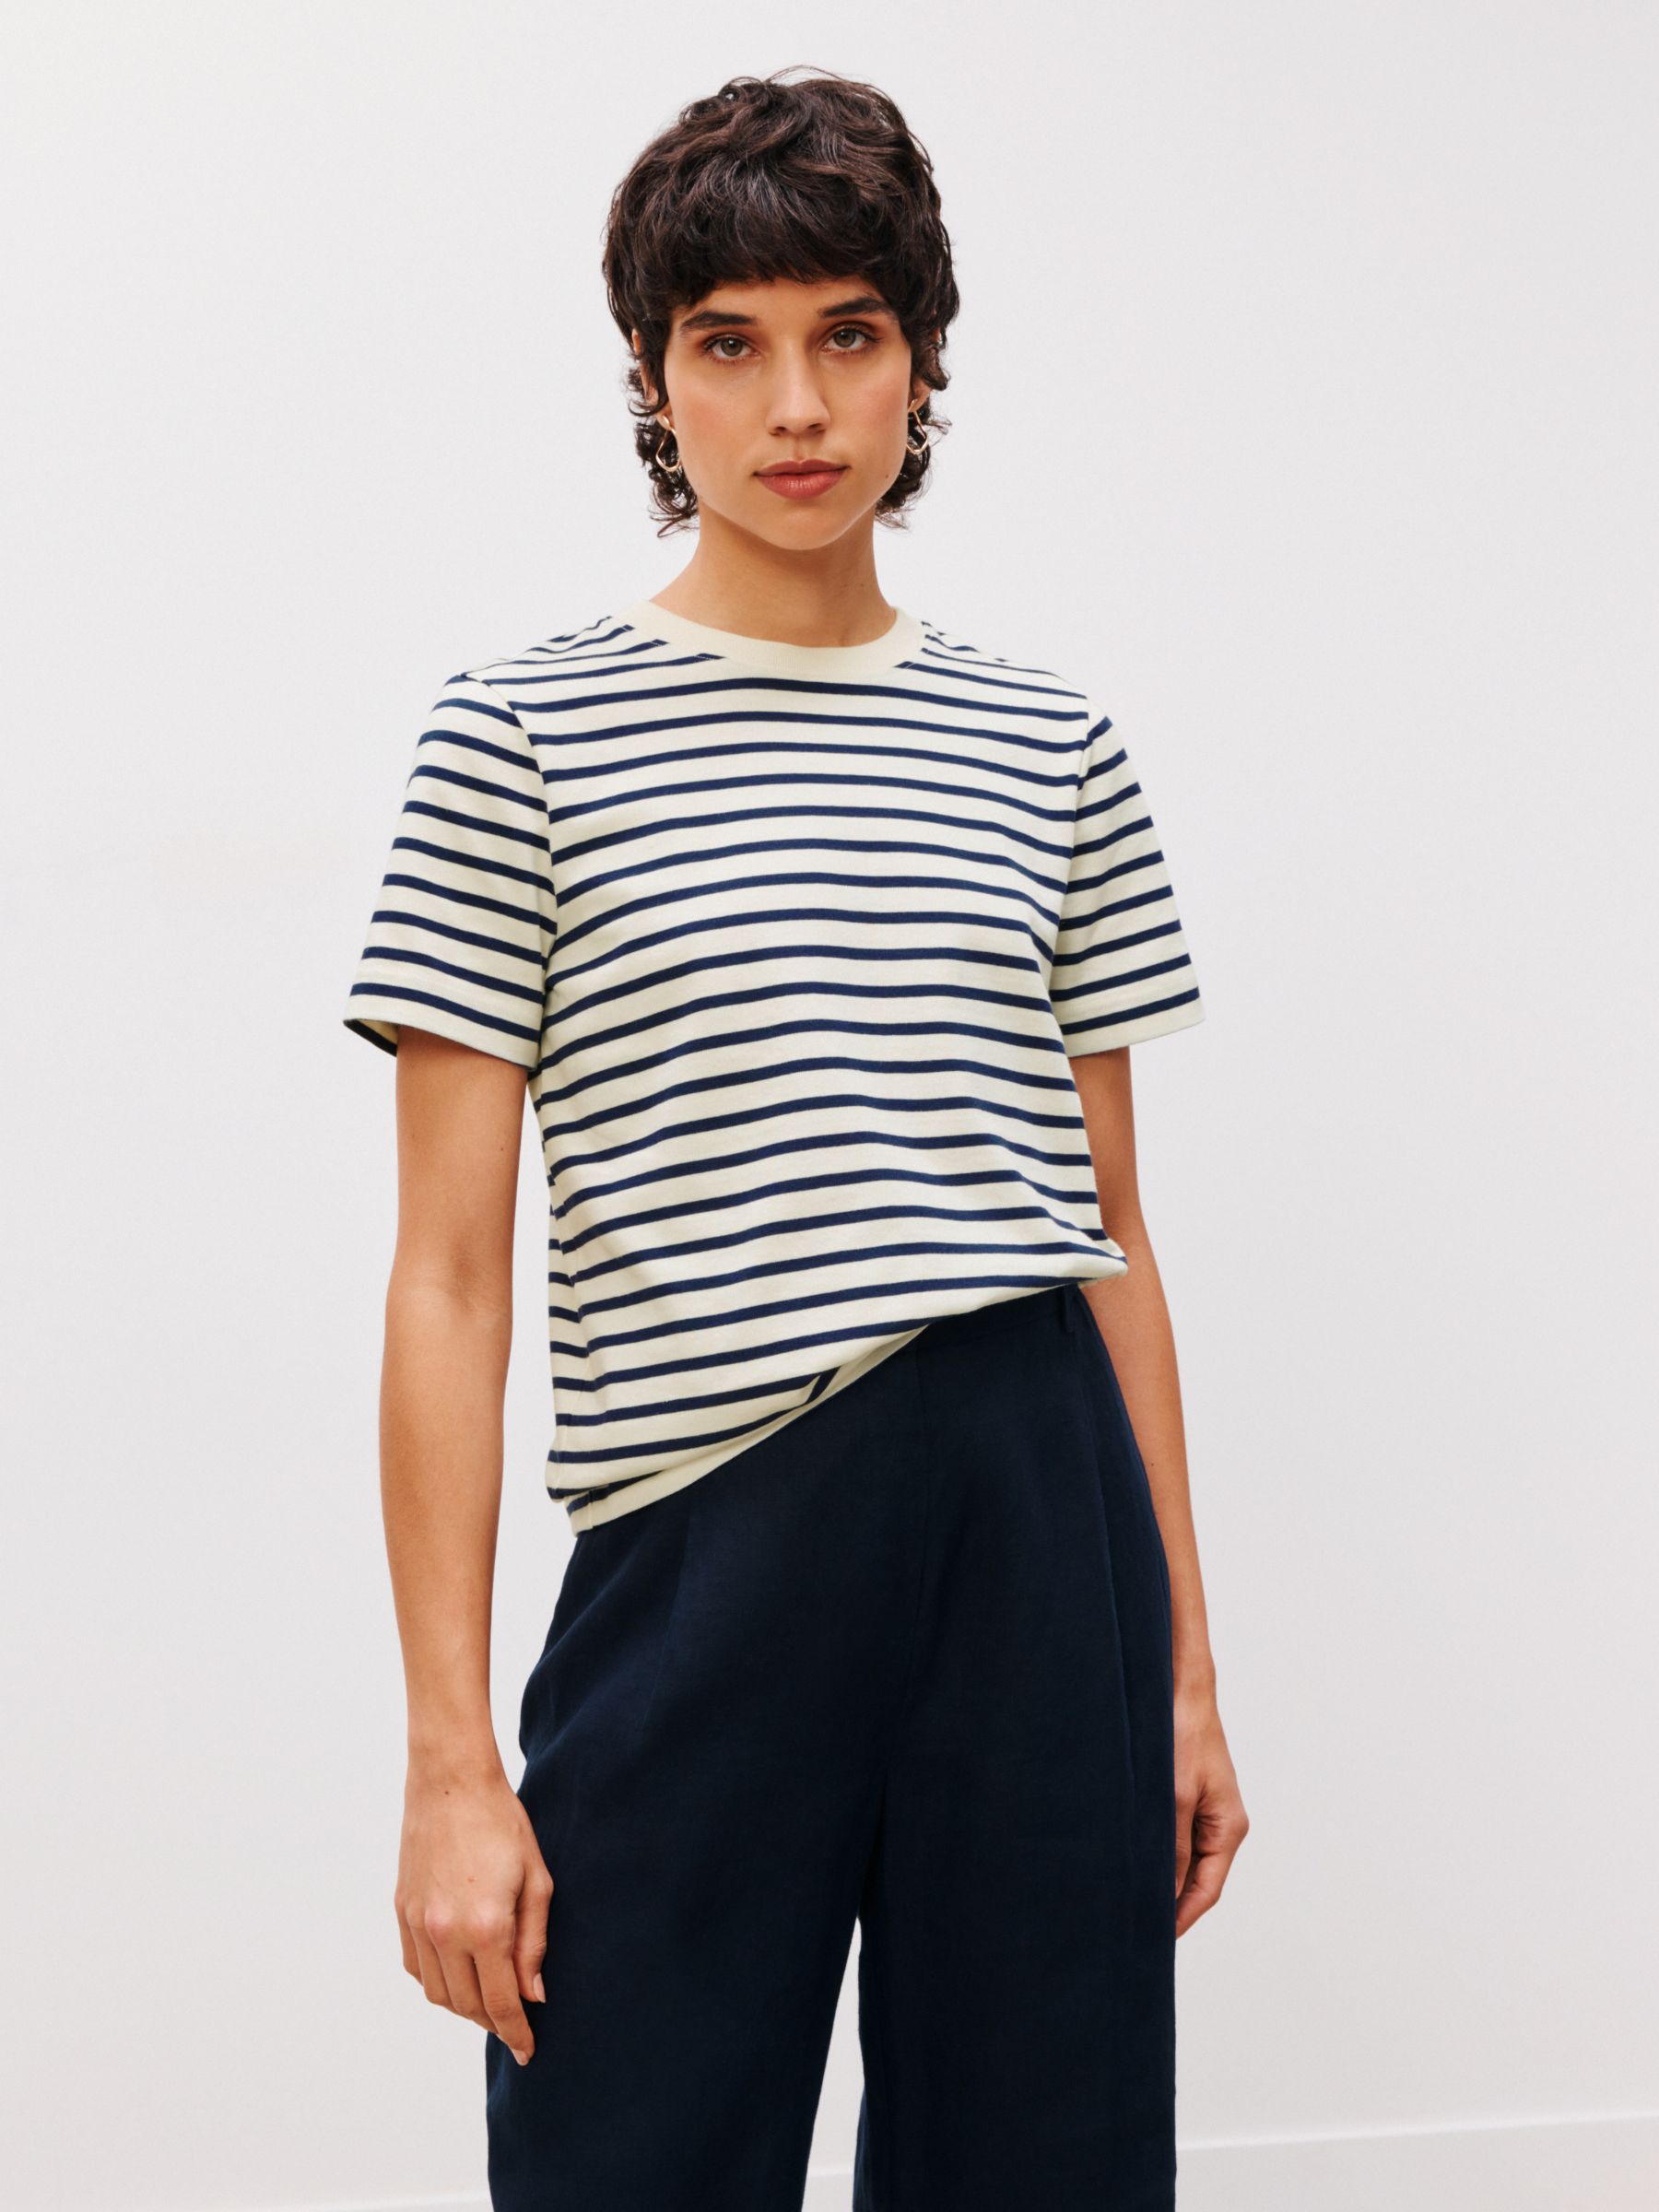 John Lewis Premium Cotton Stripe Short Sleeve T-Shirt, Navy/Ecru at ...